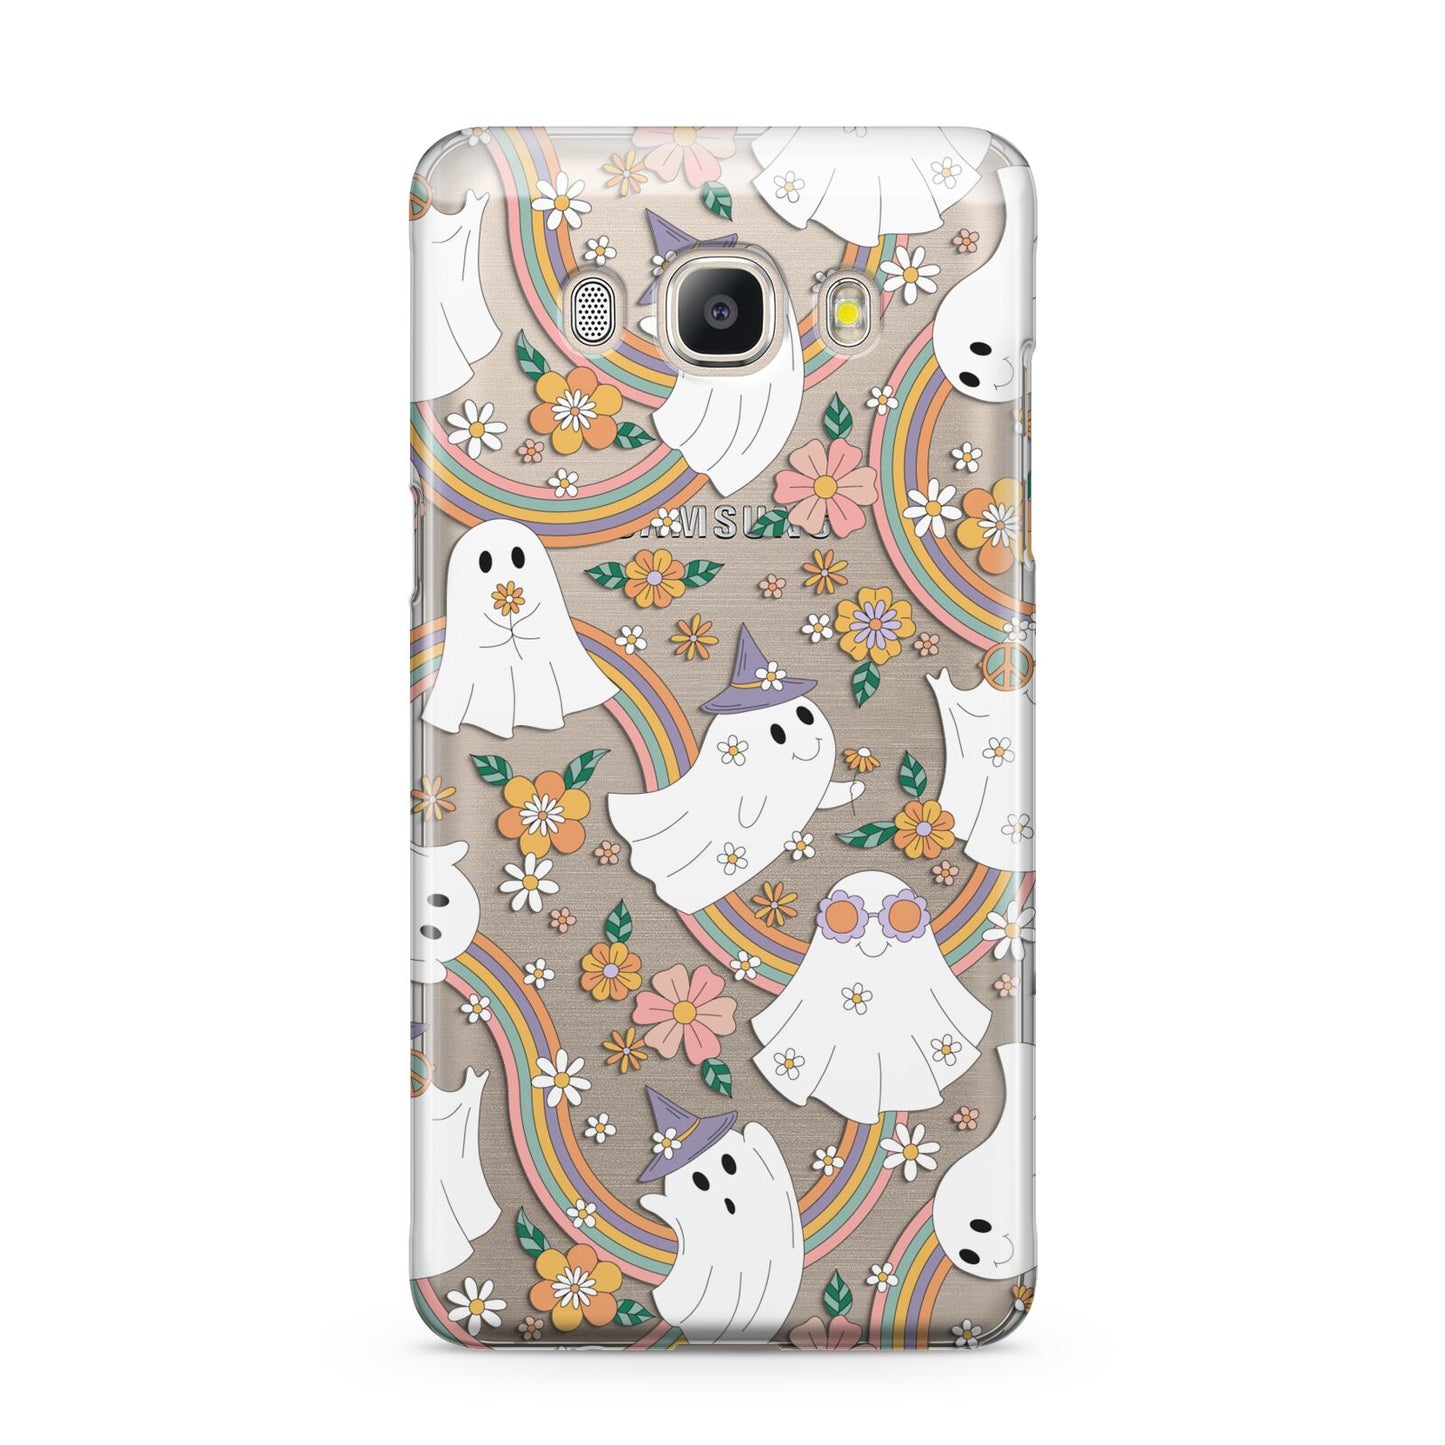 Rainbow Ghost Samsung Galaxy J5 2016 Case